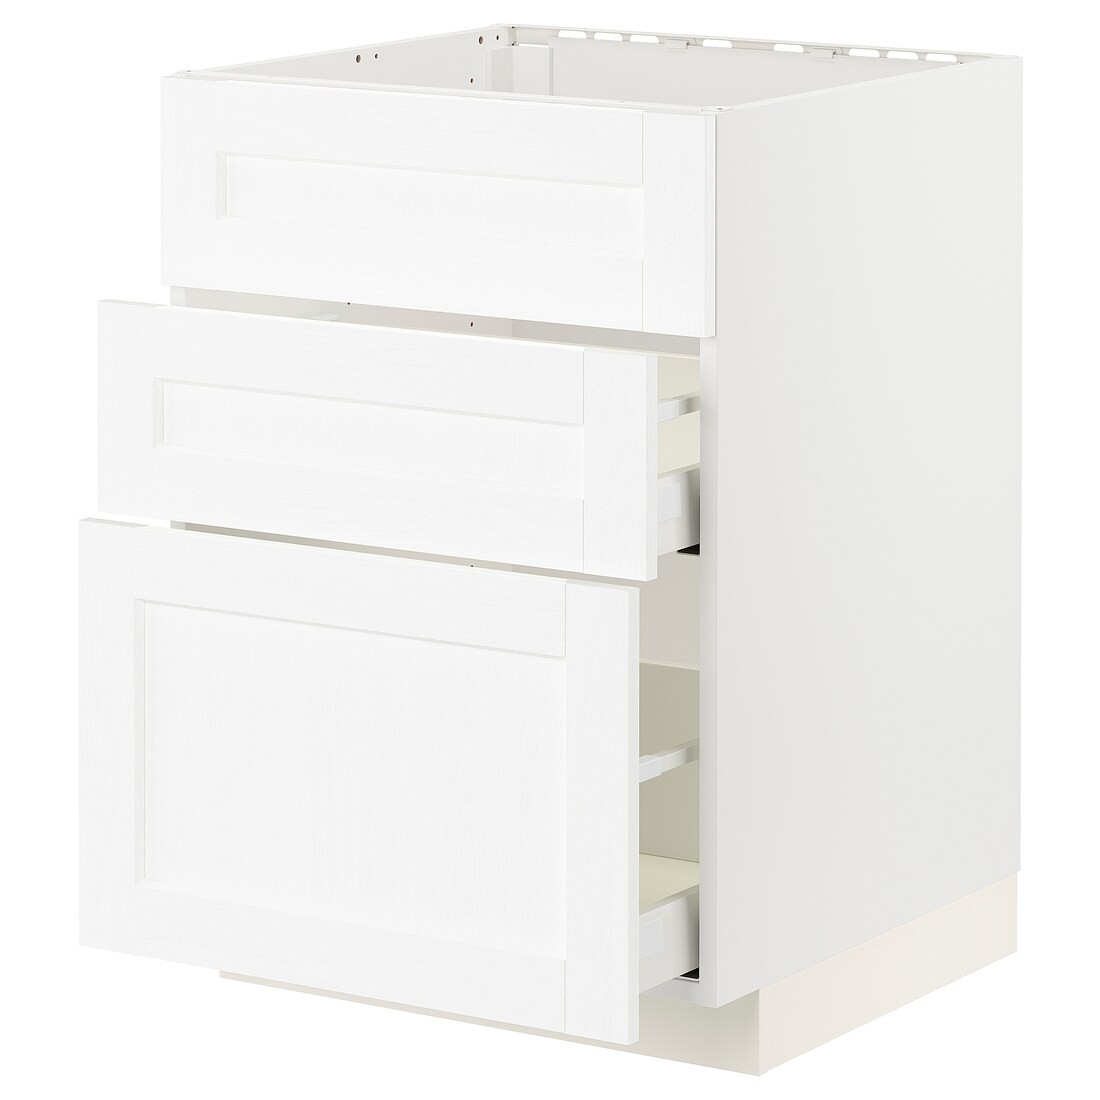 METOD МЕТОД / MAXIMERA МАКСИМЕРА Напольный шкаф под мойку с ящиками, белый Enköping / белый имитация дерева, 60x60 см